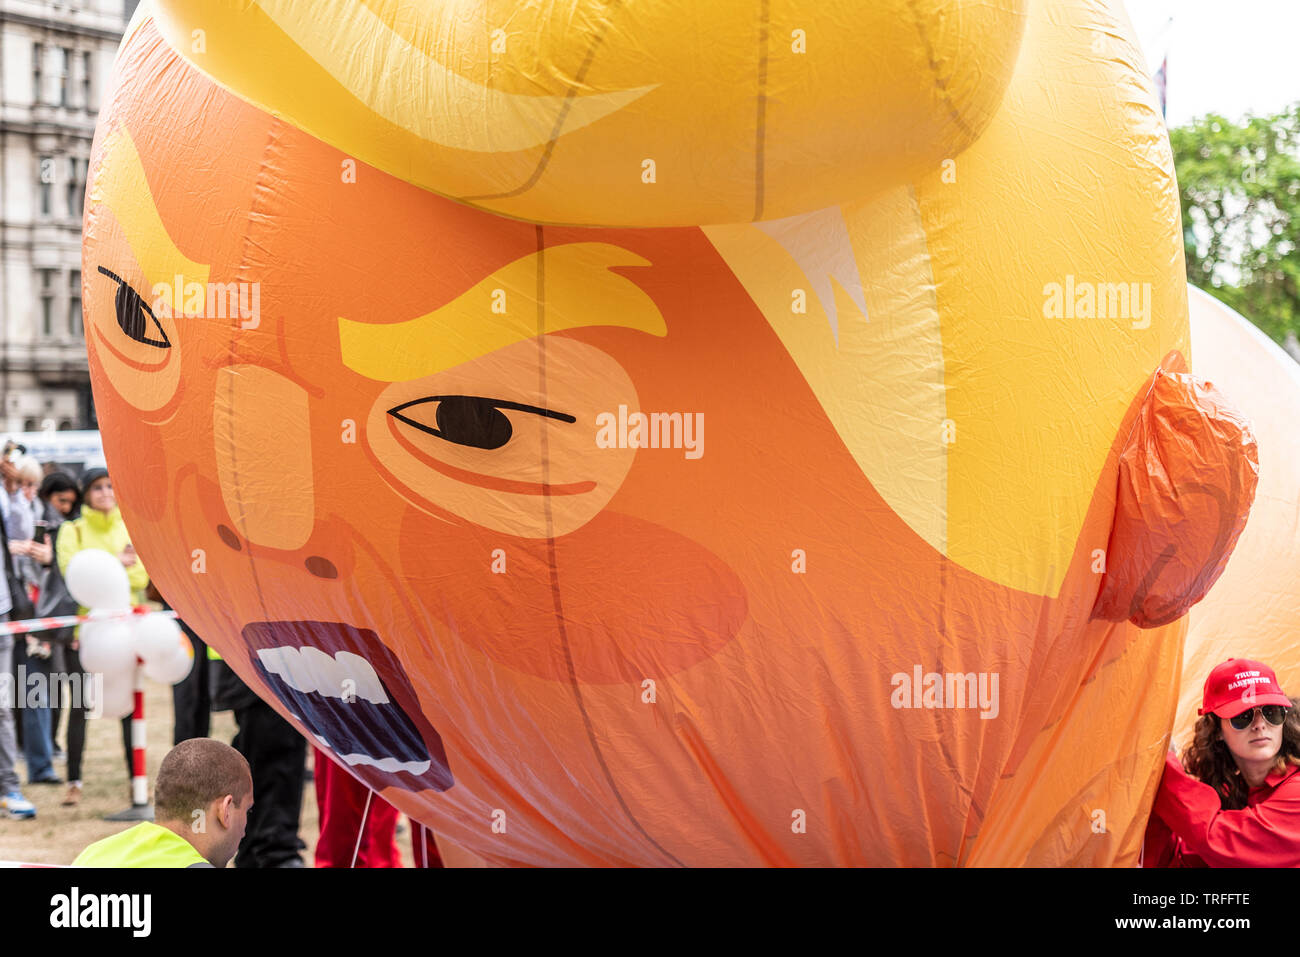 Donald Trump baby blimp Ballon in Parliament Square, London, UK während der US-Präsident auf Staatsbesuch. Gesicht während der Inflation. Verärgert aussehen Stockfoto